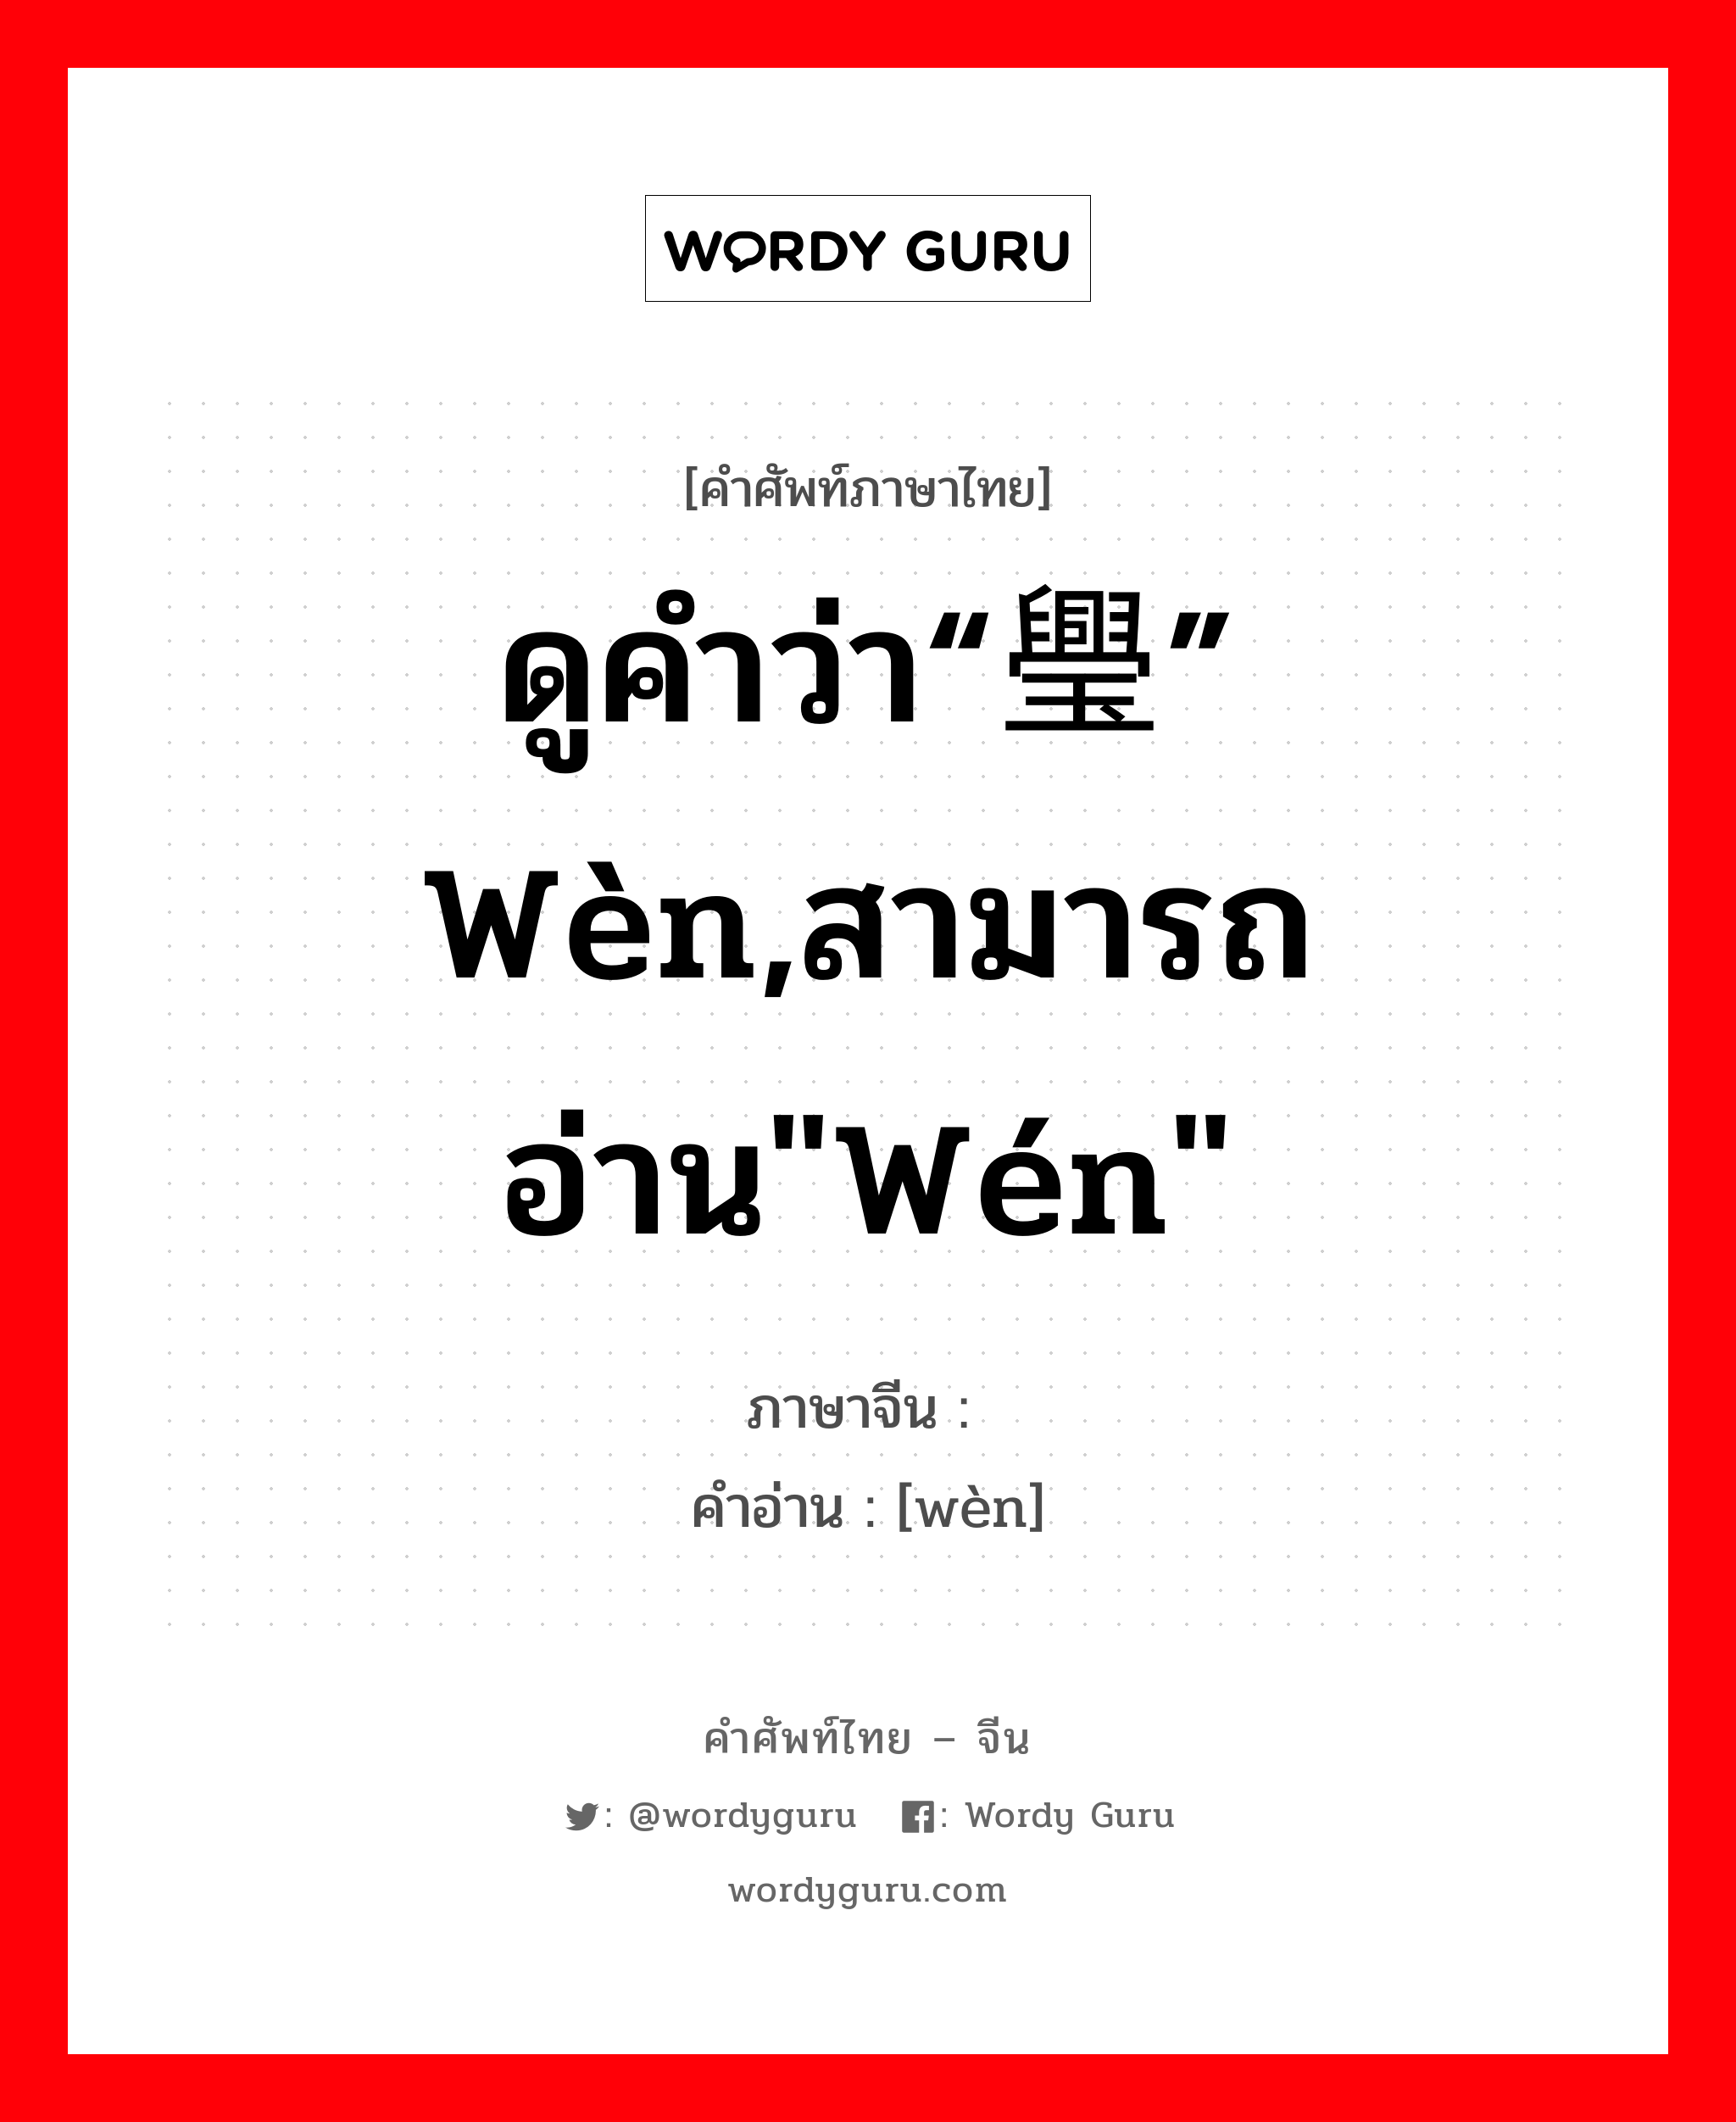 ดูคำว่า“璺” wèn,สามารถอ่าน"wén" ภาษาจีนคืออะไร, คำศัพท์ภาษาไทย - จีน ดูคำว่า“璺” wèn,สามารถอ่าน"wén" ภาษาจีน 纹 คำอ่าน [wèn]